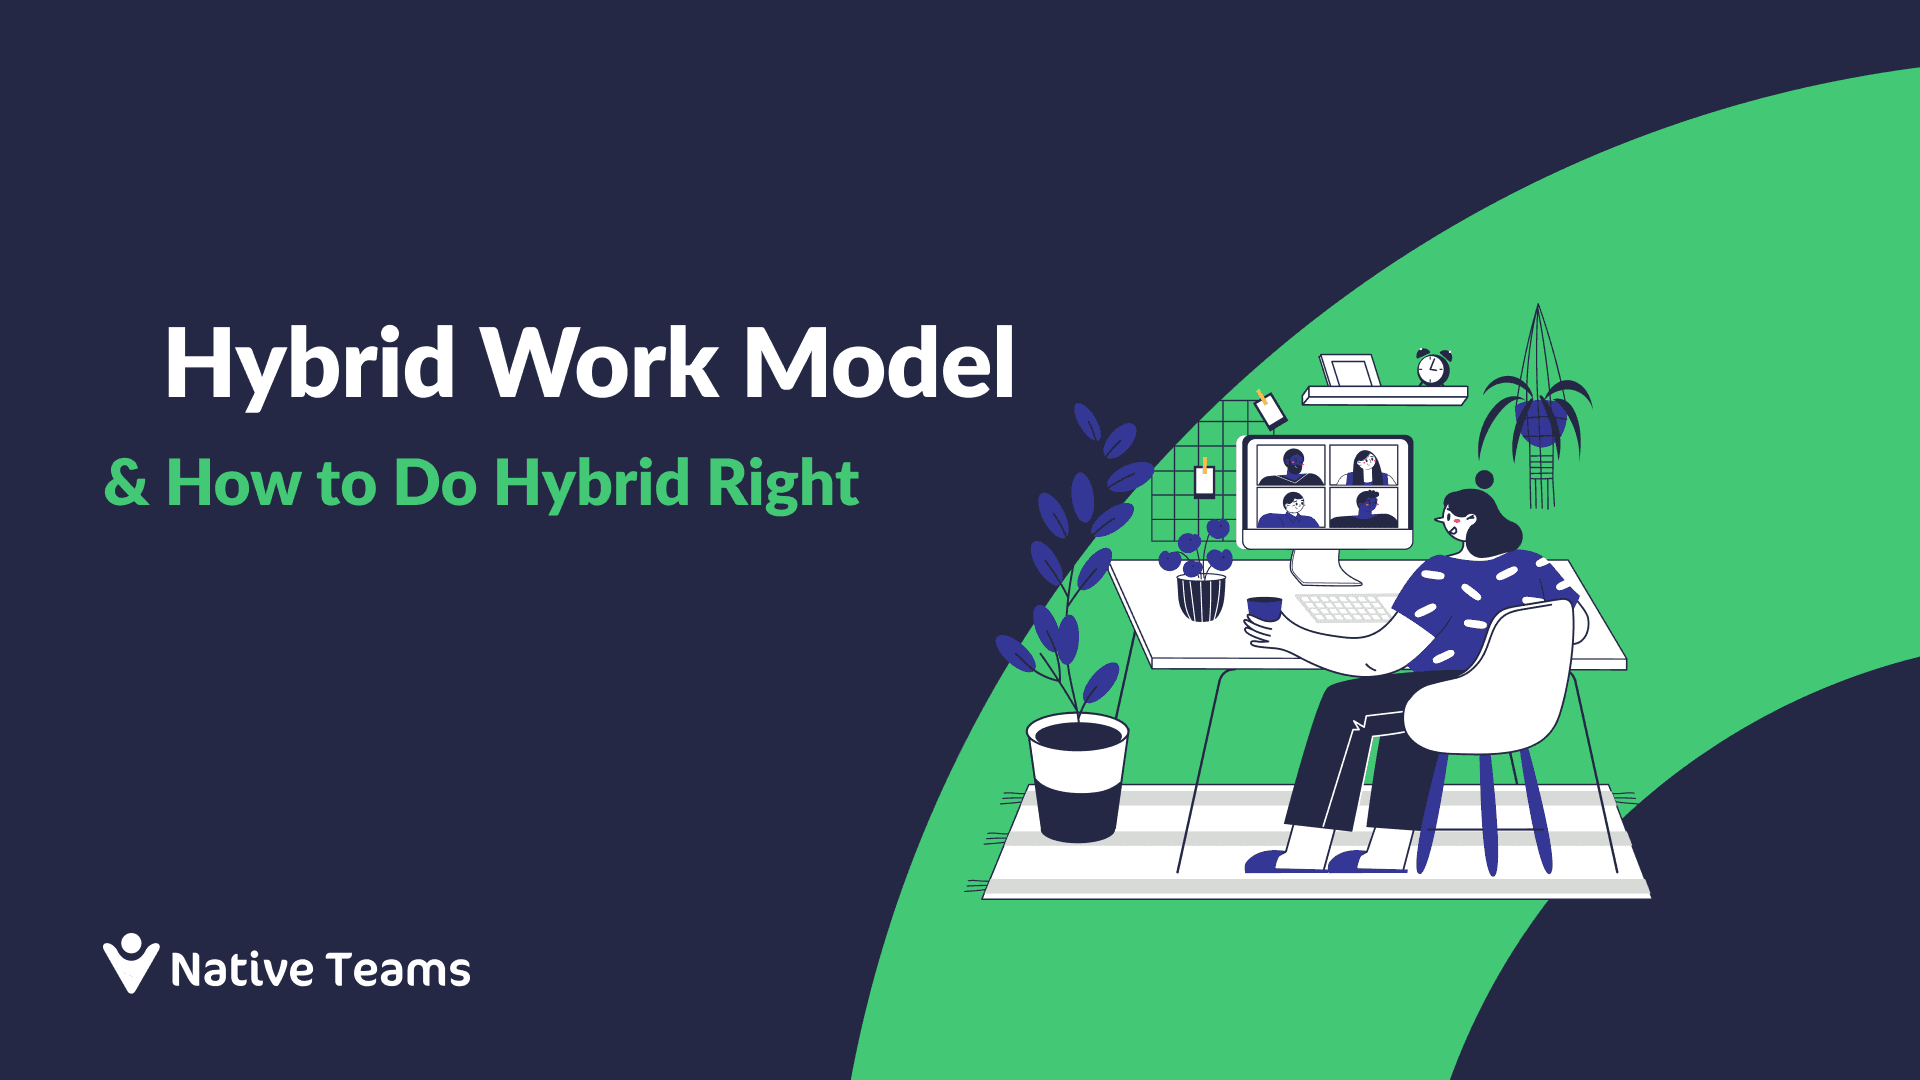 Hybrid Work Model (Hybrid Work Environment)